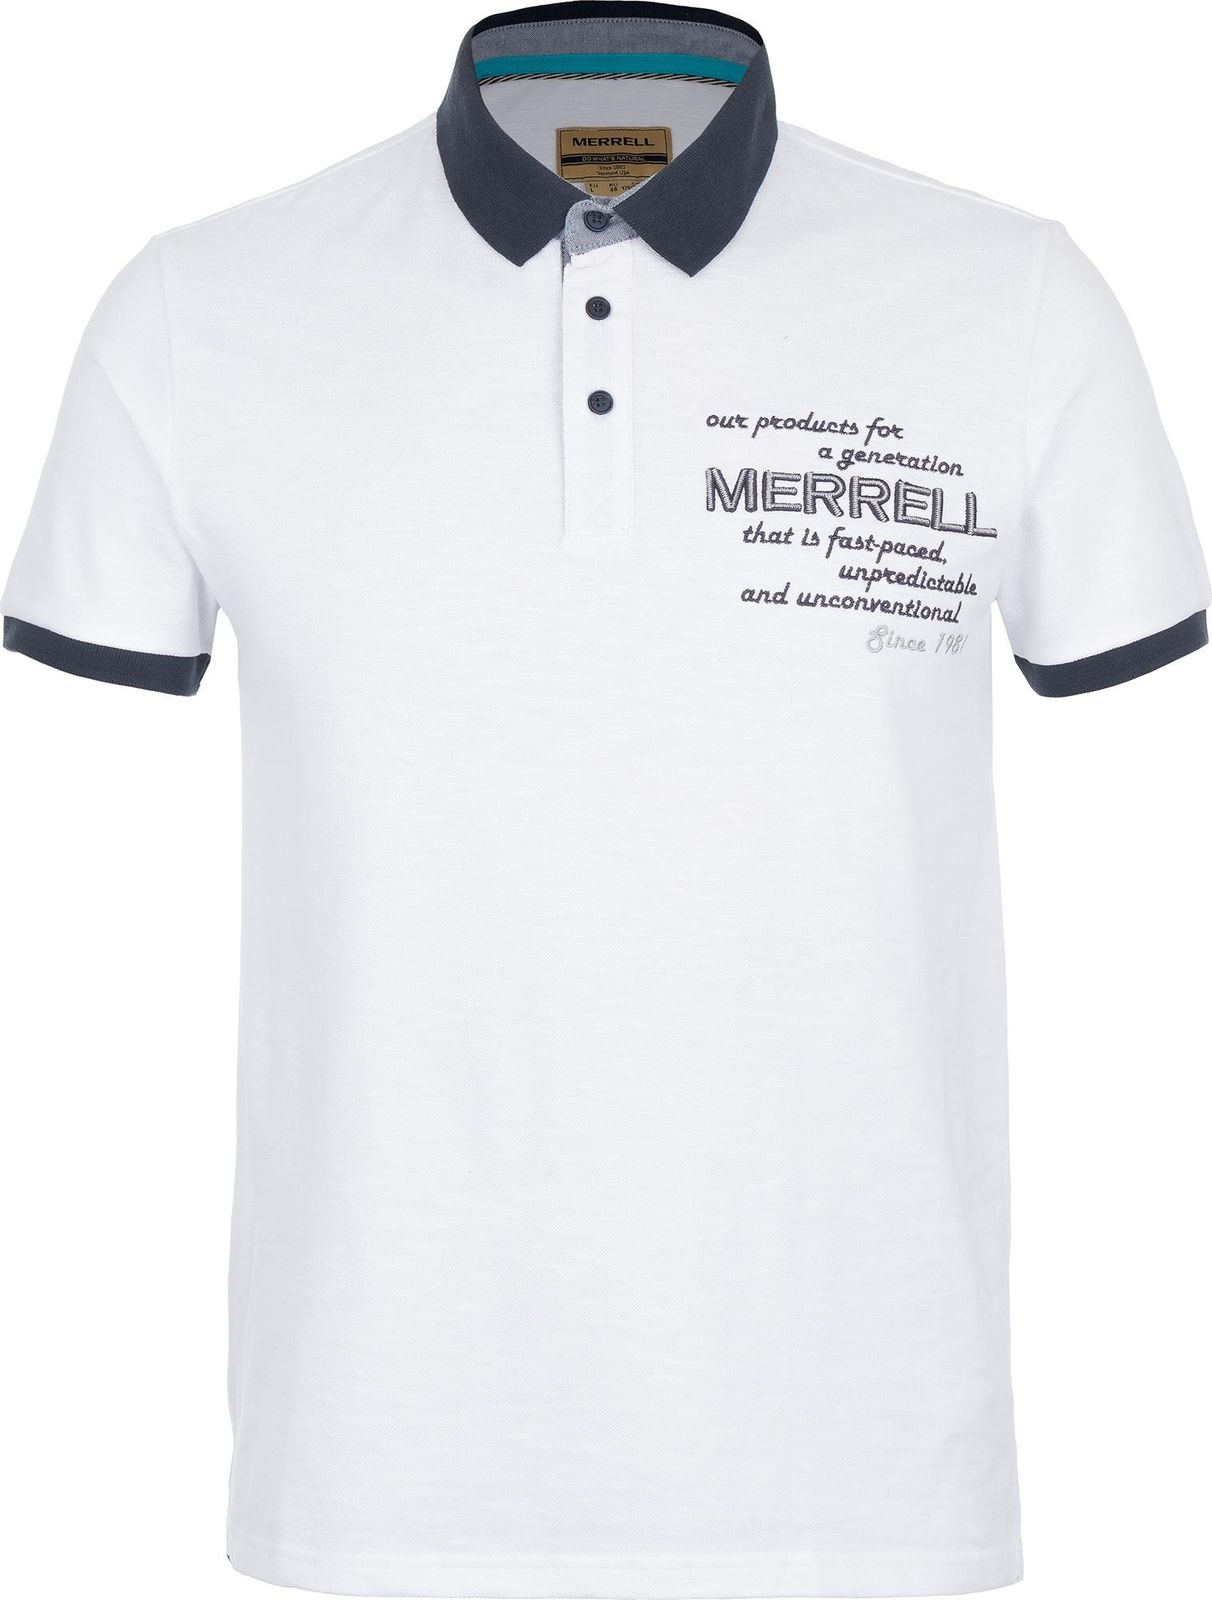   Merrell Men's Polo, : . S17AMRPOM01-00.  50